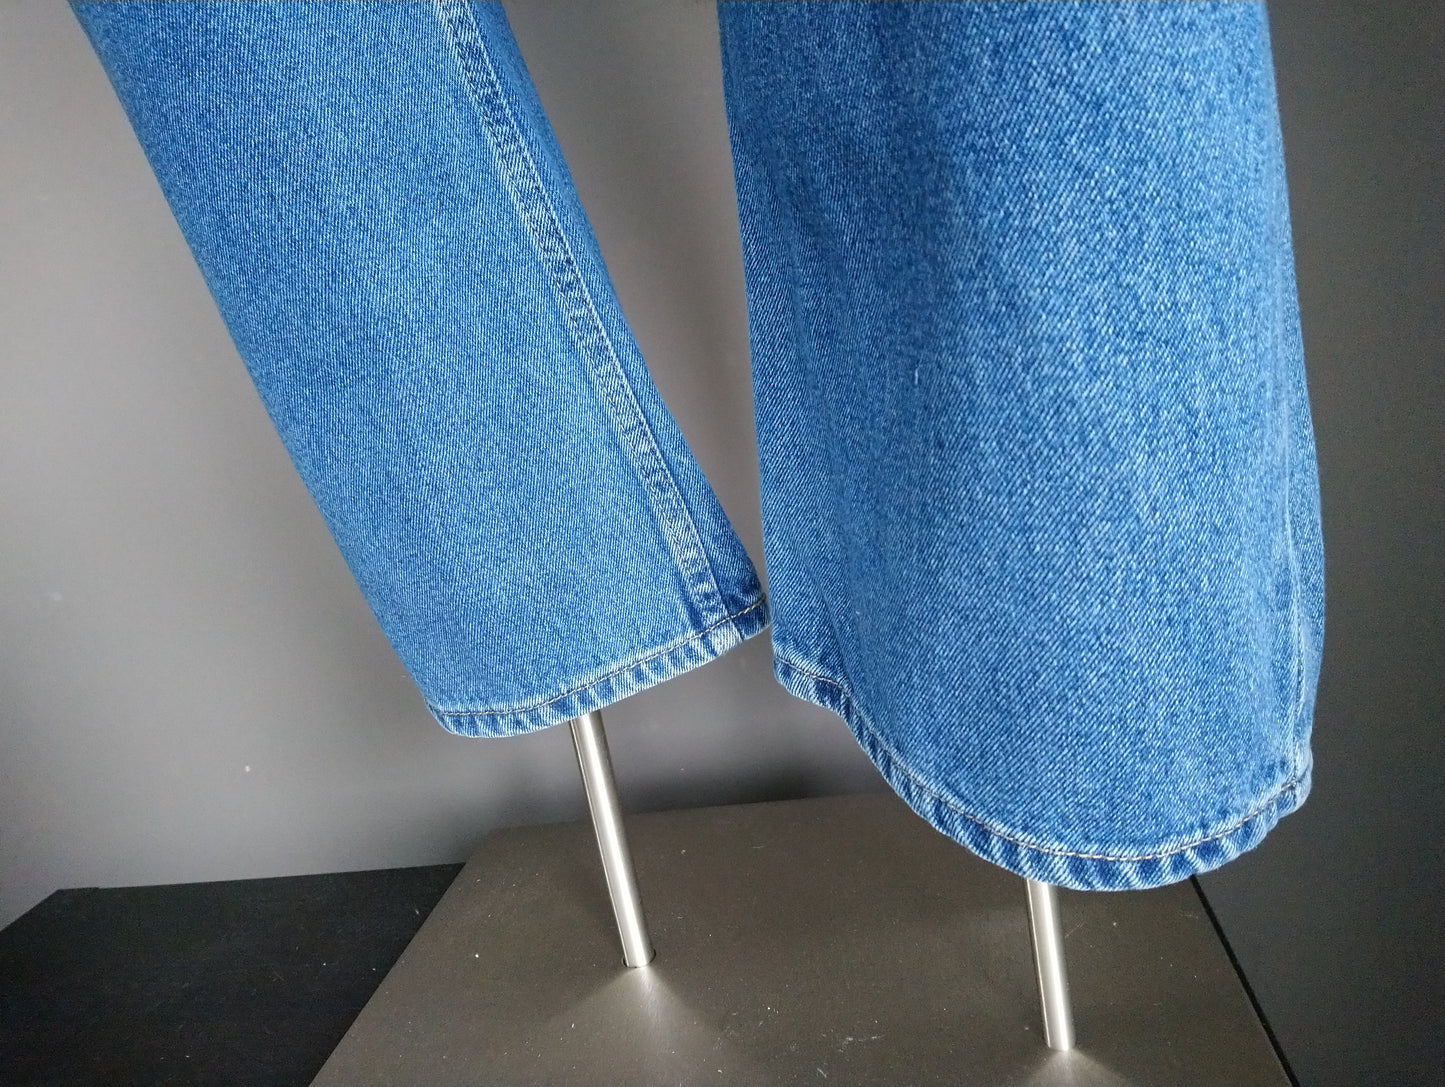 Blue Harbor Jeans. Blau gefärbt. Größe W32 - L30.